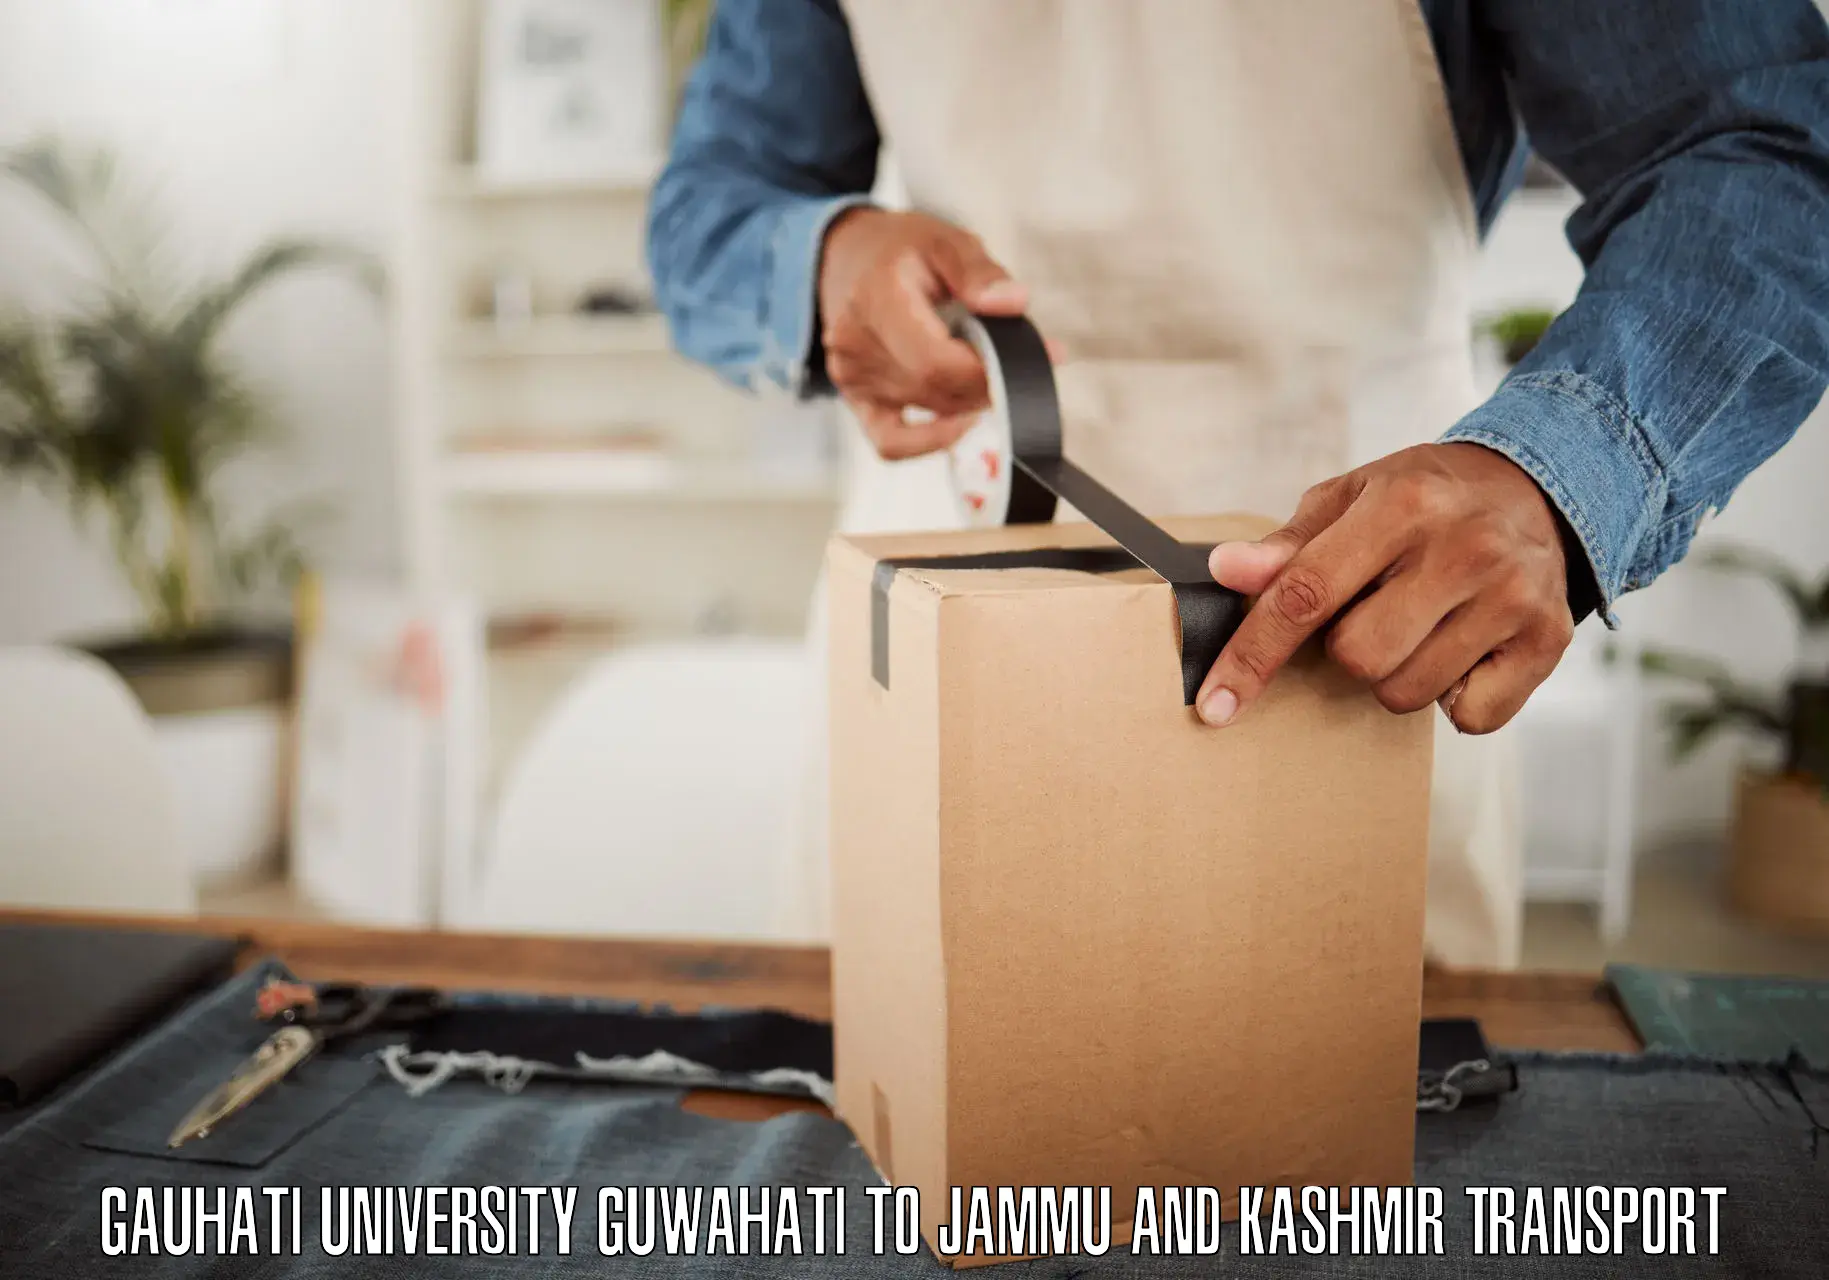 Transport in sharing Gauhati University Guwahati to Jammu